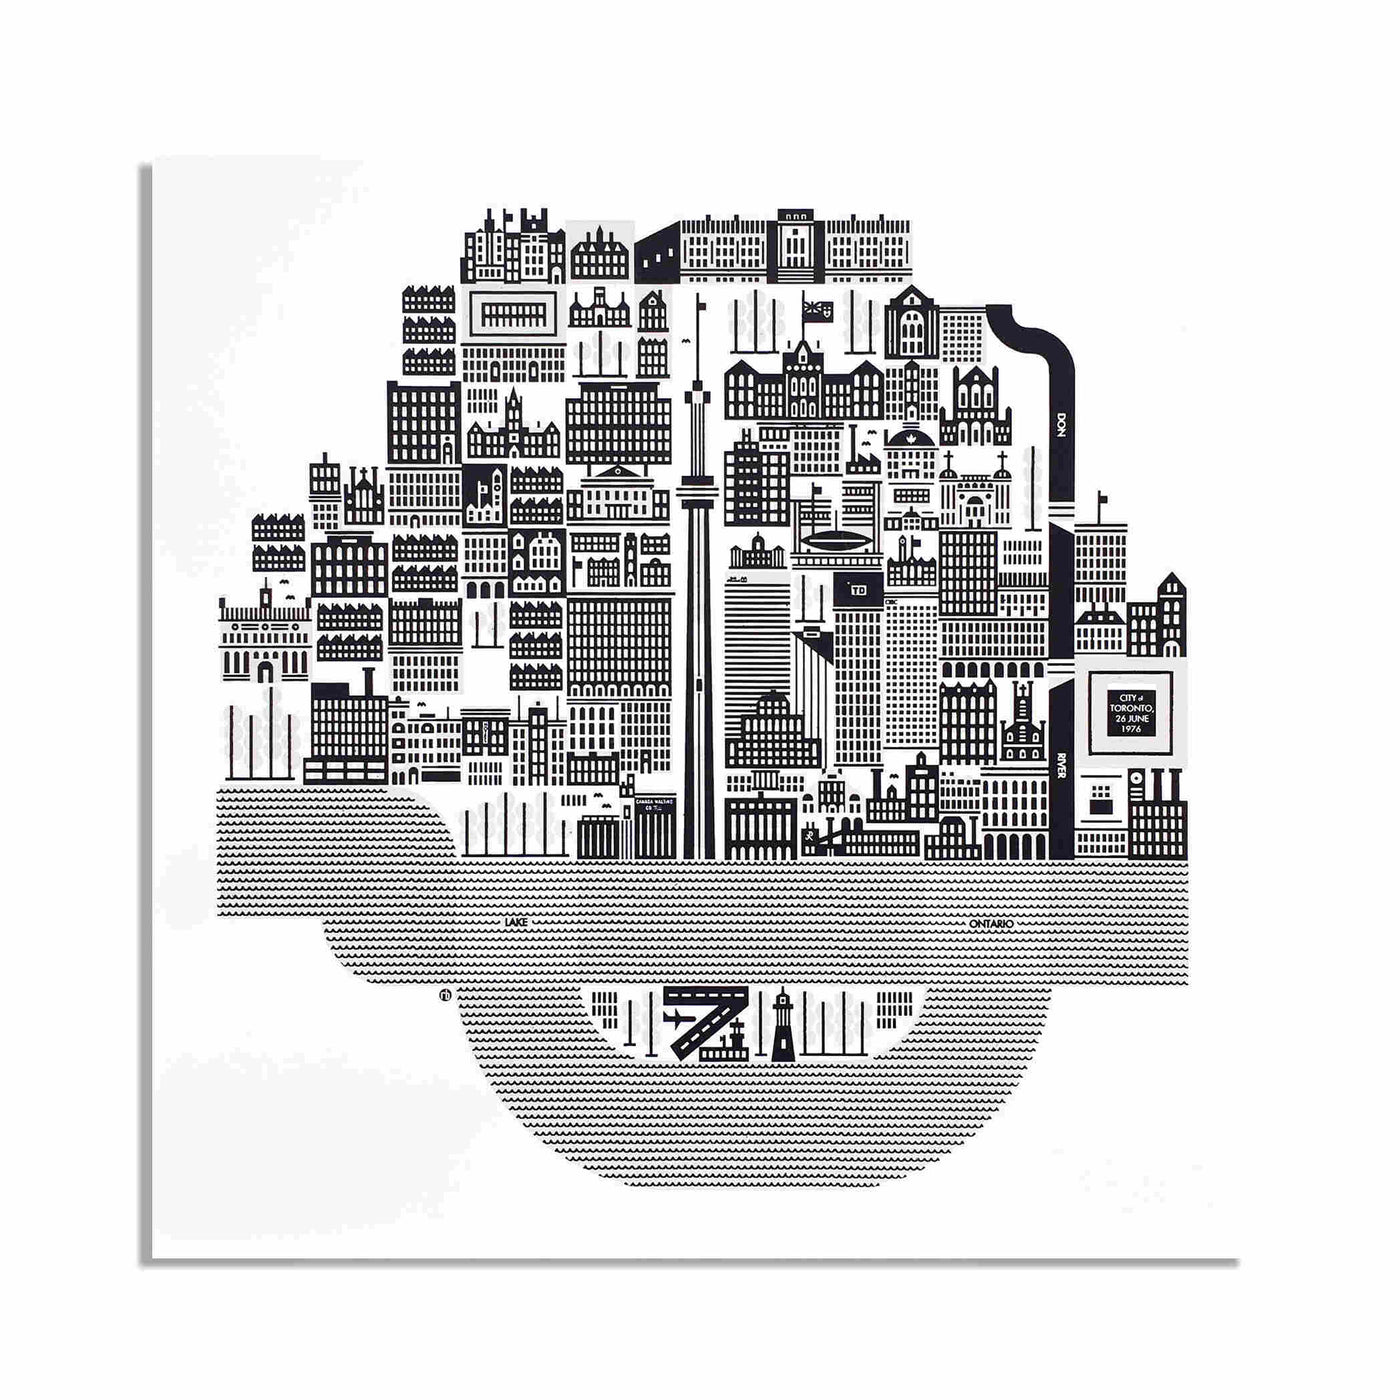 Célébrez l'histoire de Toronto avec les tirages artistiques de Raymond Biesinger. Imprimées avec soin, ces cartes modernes sont une magnifique représentation du patrimoine architectural de la ville.